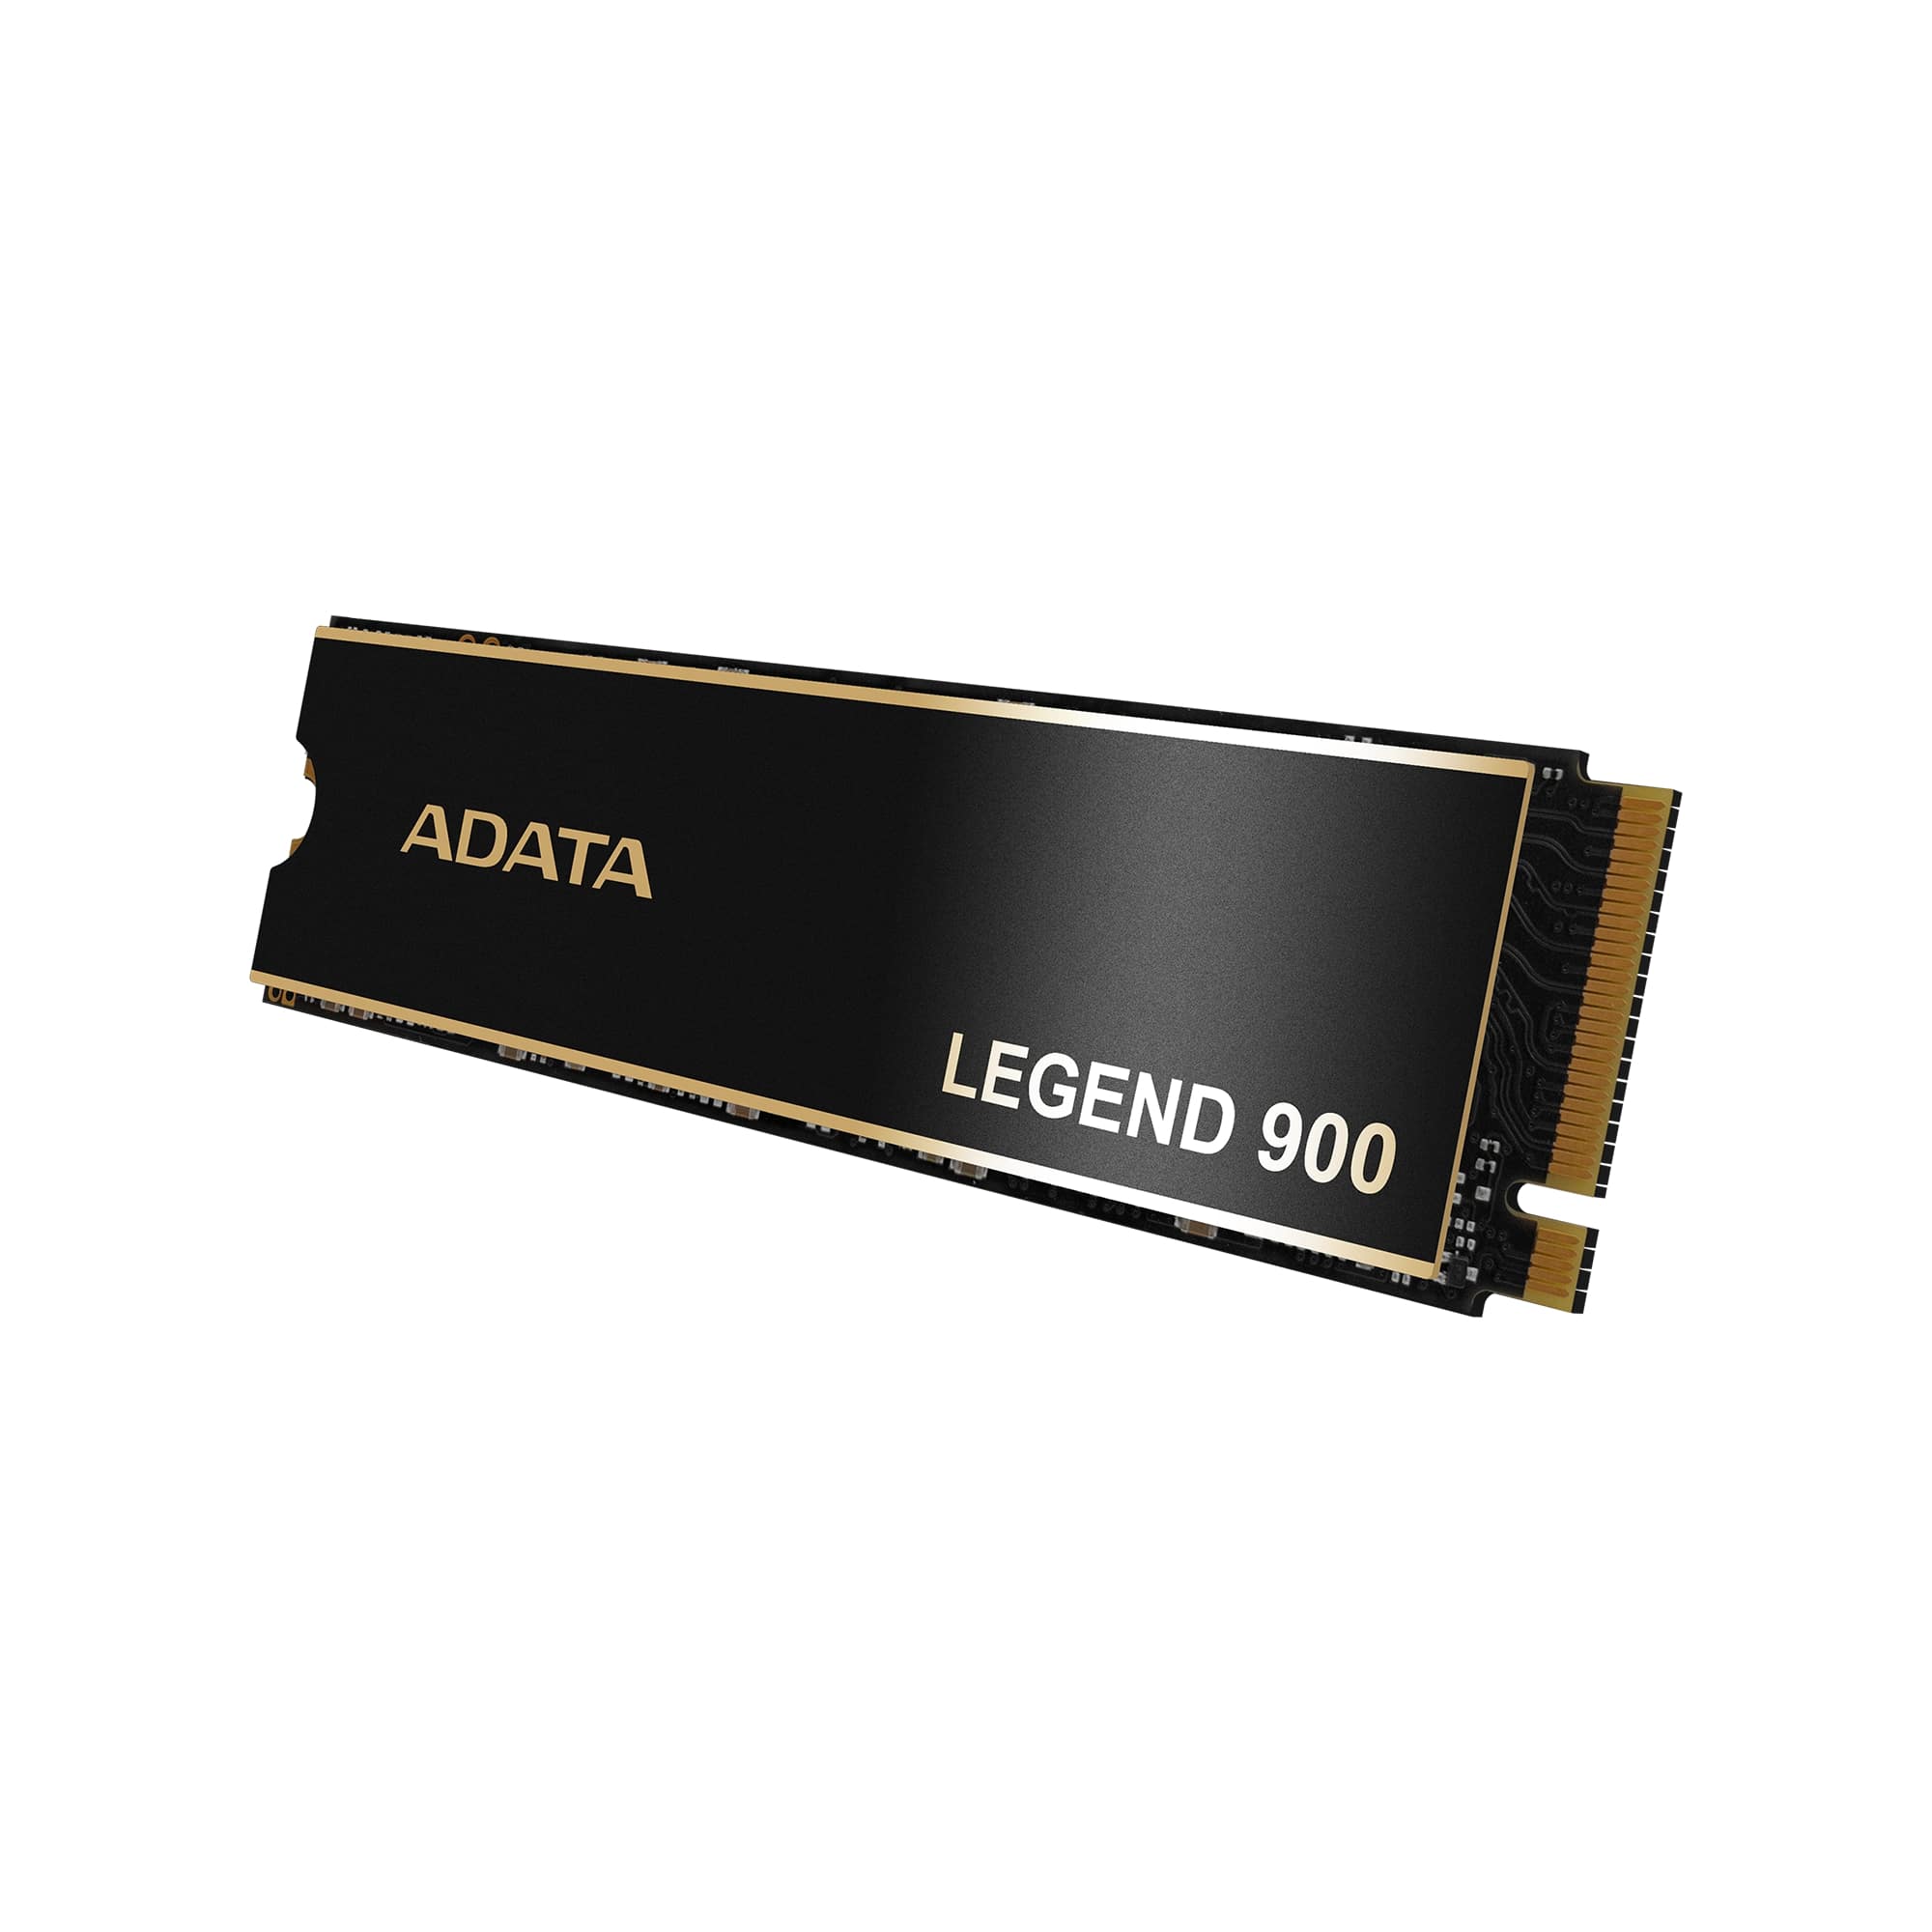 ADATA LEGEND 900/ 1TB/ SSD/ M.2 NVMe/ Čierna/ 5R 